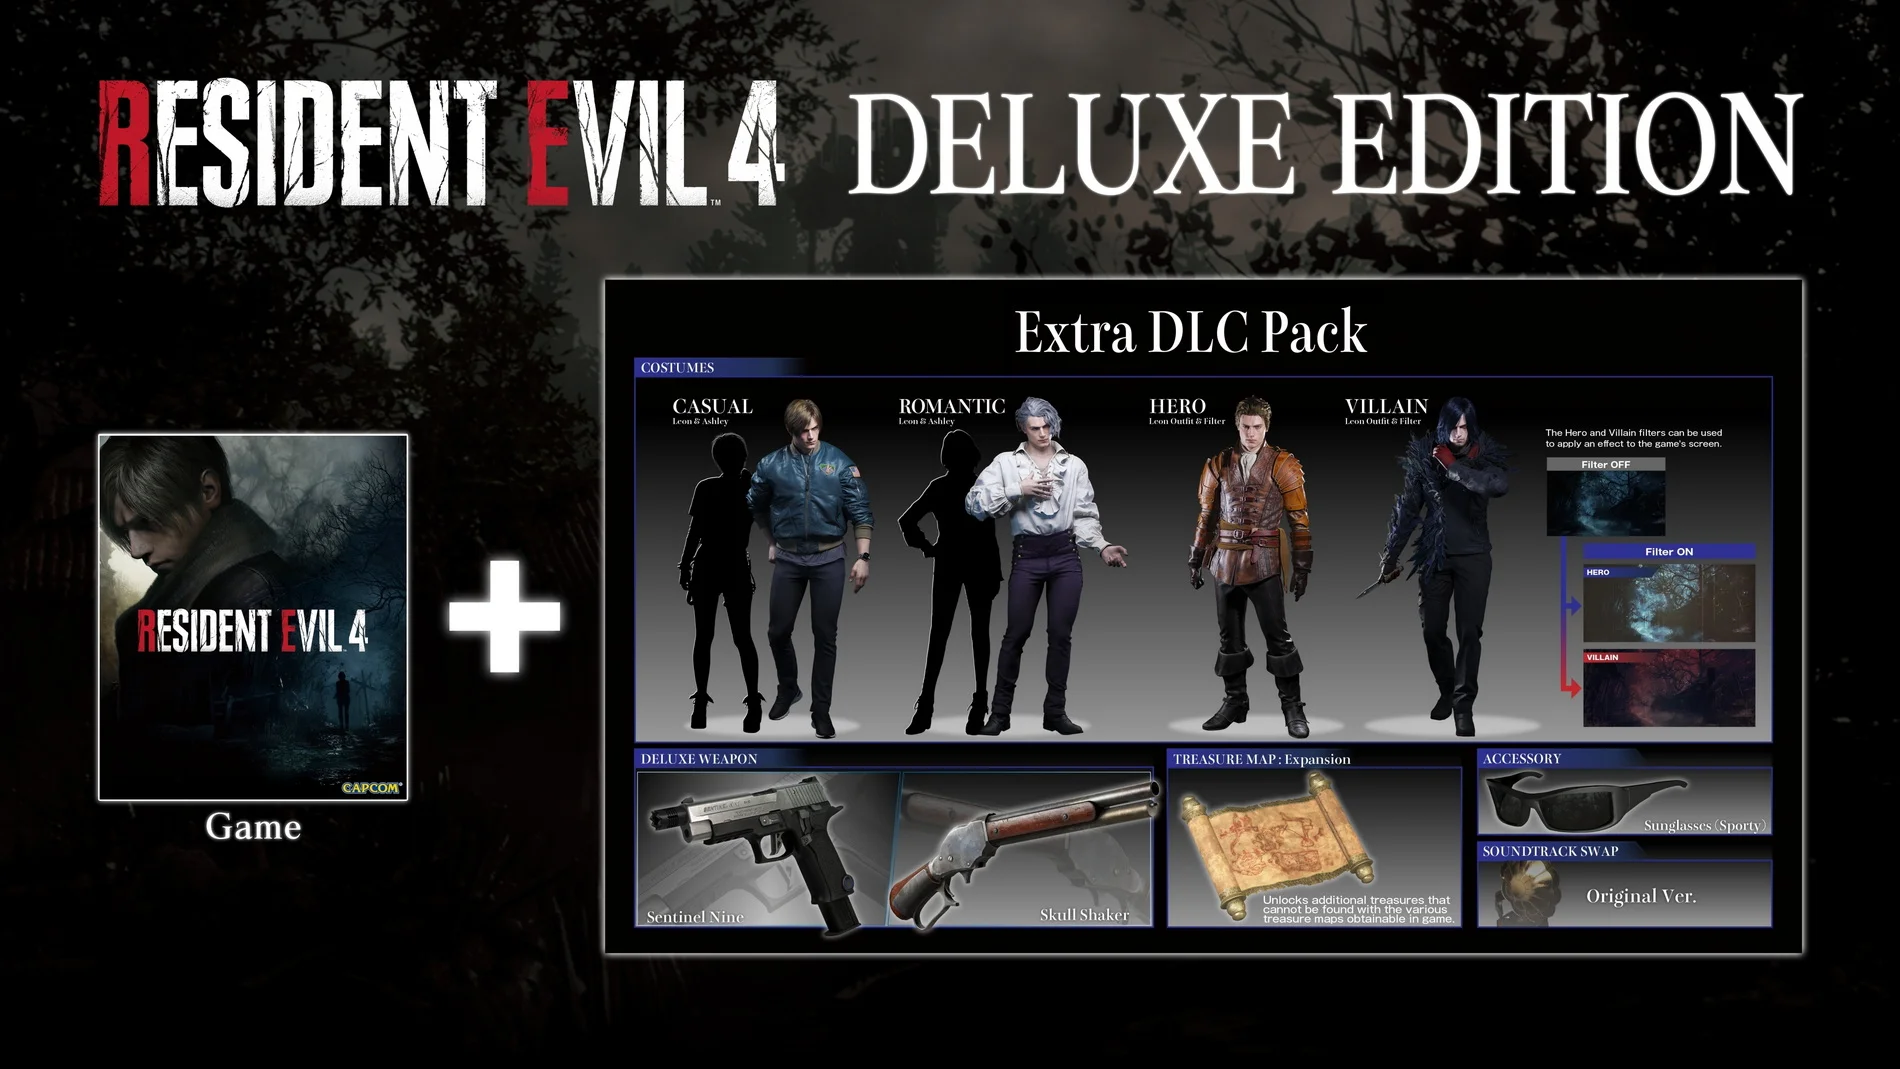 Появились подробности изданий ремейка Resident Evil 4 и новые скриншоты - фото 1